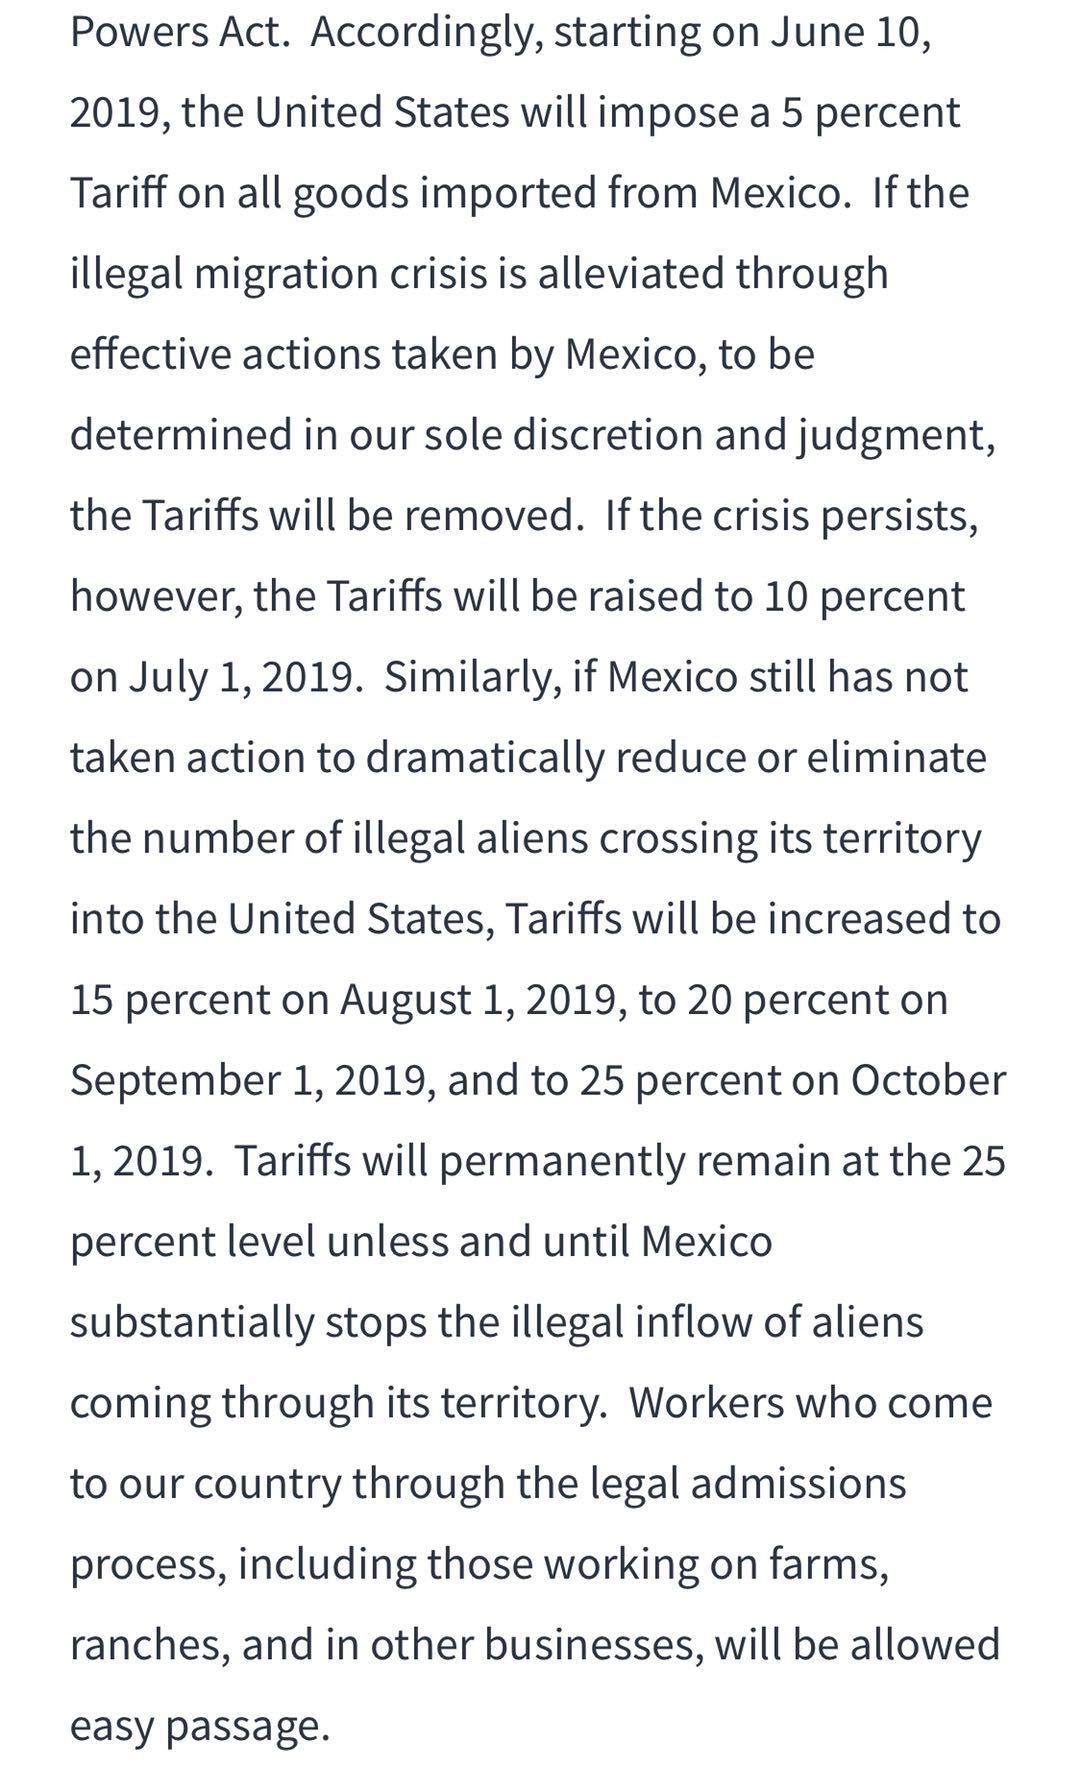 特朗普：将对墨西哥输美商品加征5%关税